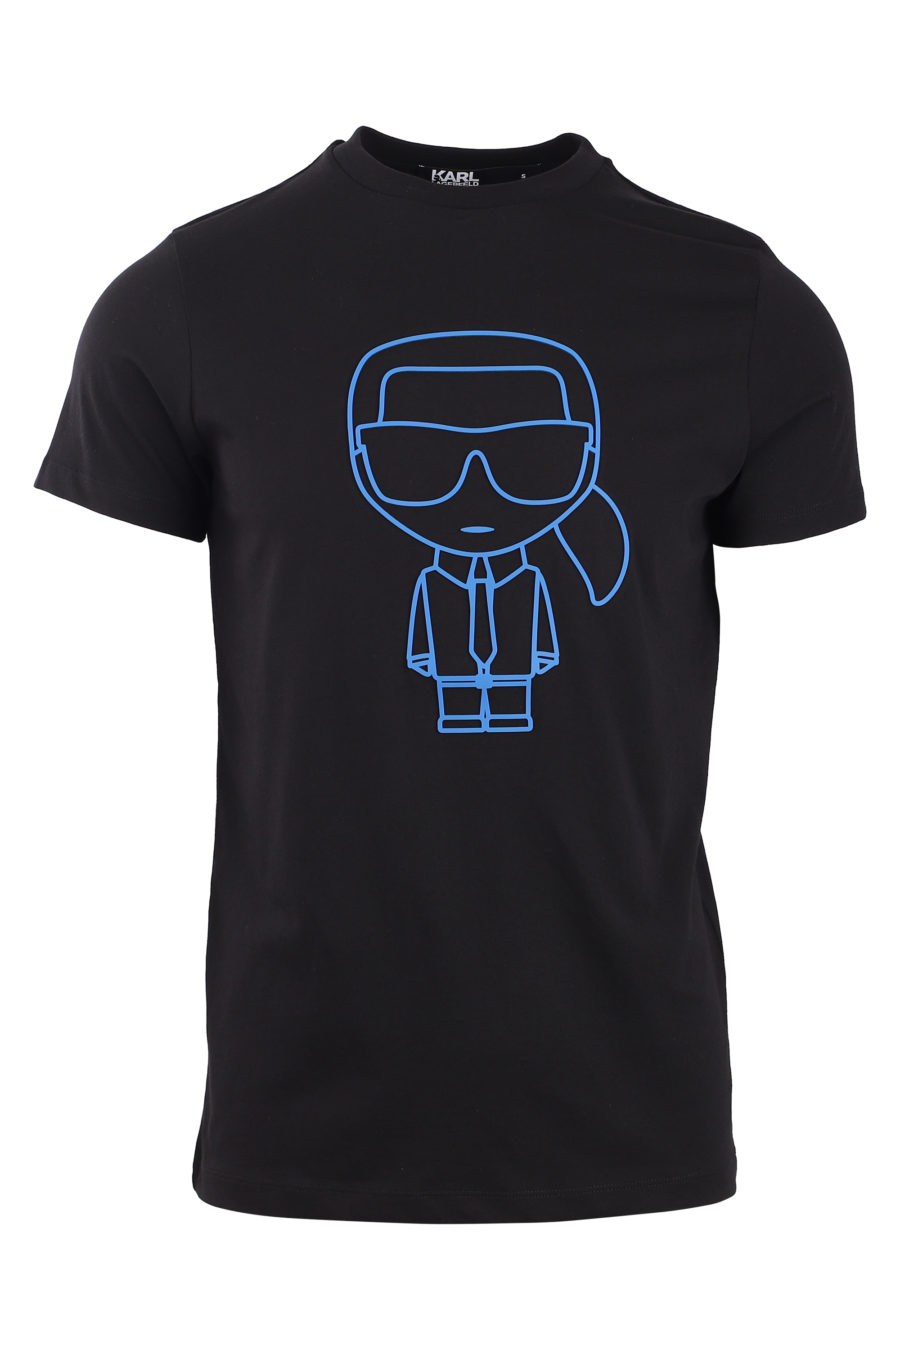 Camiseta negra con logo en silueta azul - IMG 0795